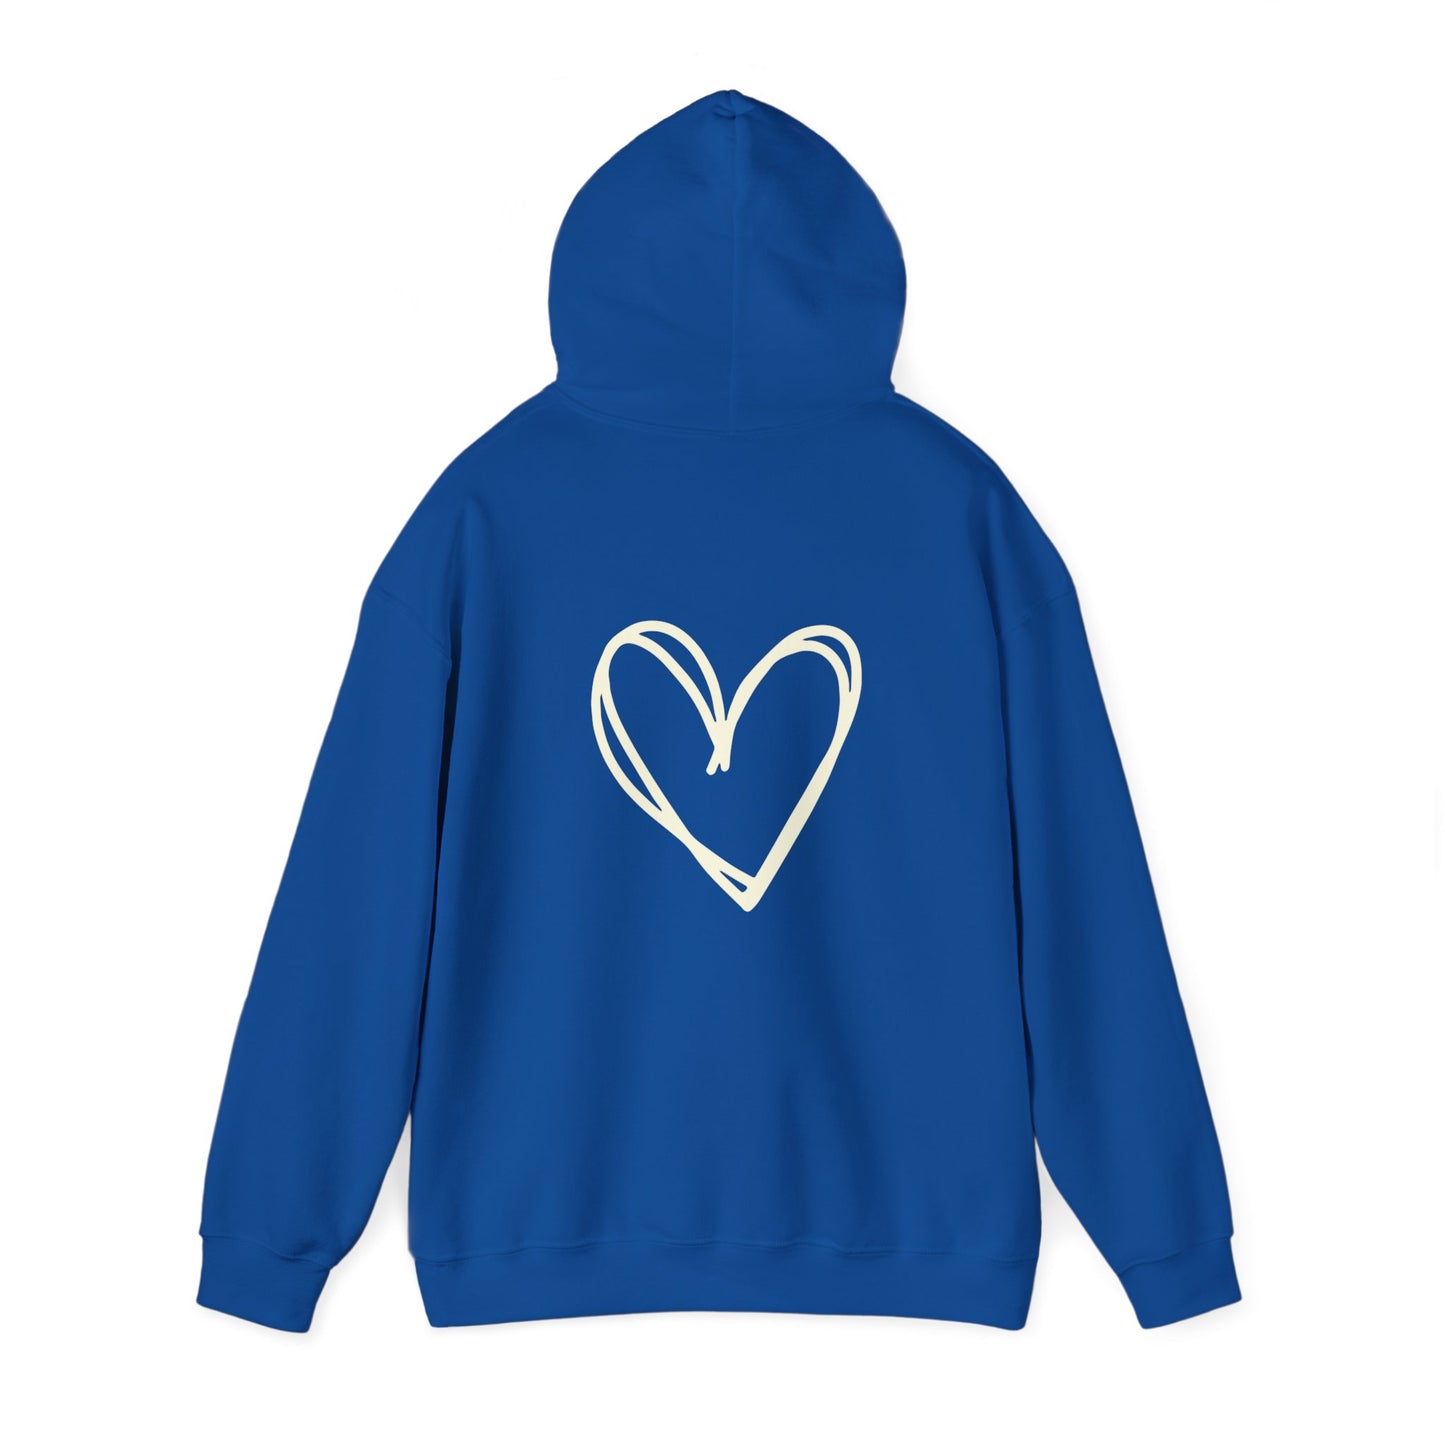 Self-Love Club Hoodie Sweatshirt